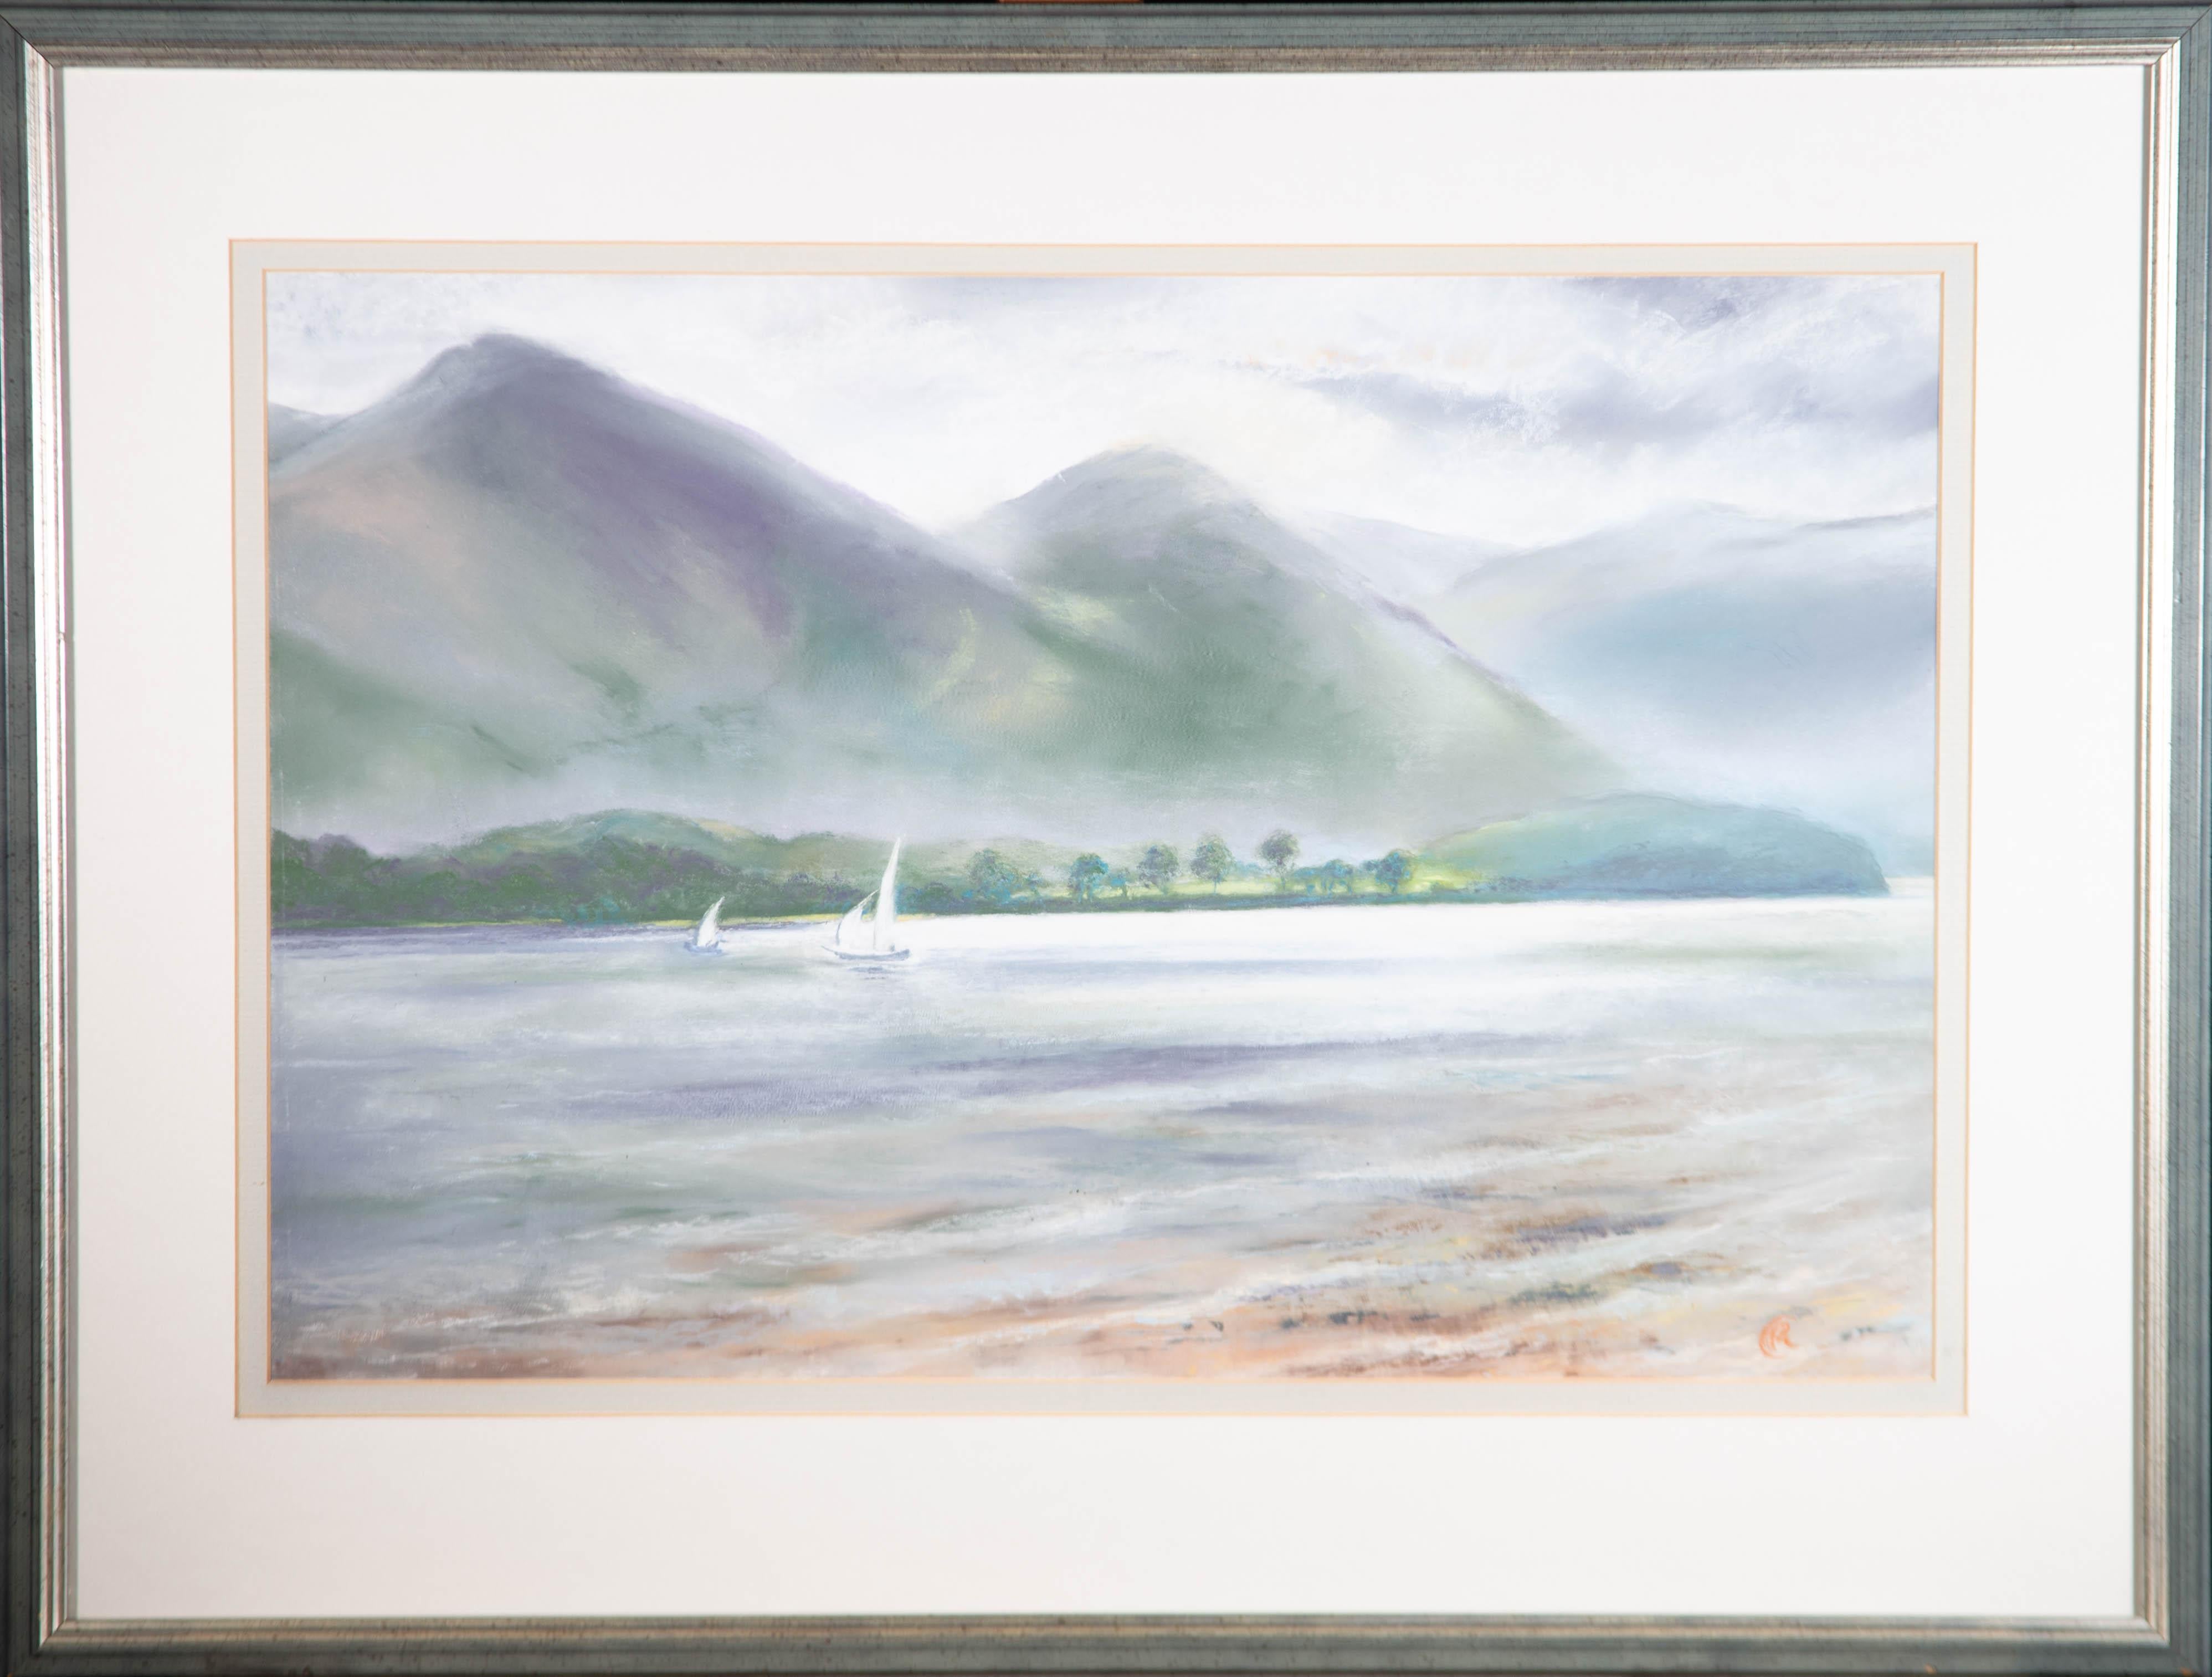 Eine reizvolle Pastellzeichnung von P.M.C. Carrott, die eine Landschaftsansicht des Bassenthwaite Lake, eines der größten Gewässer im englischen Lake District, zeigt. Monogrammiert in der rechten unteren Ecke. Auf der Rückseite befindet sich ein